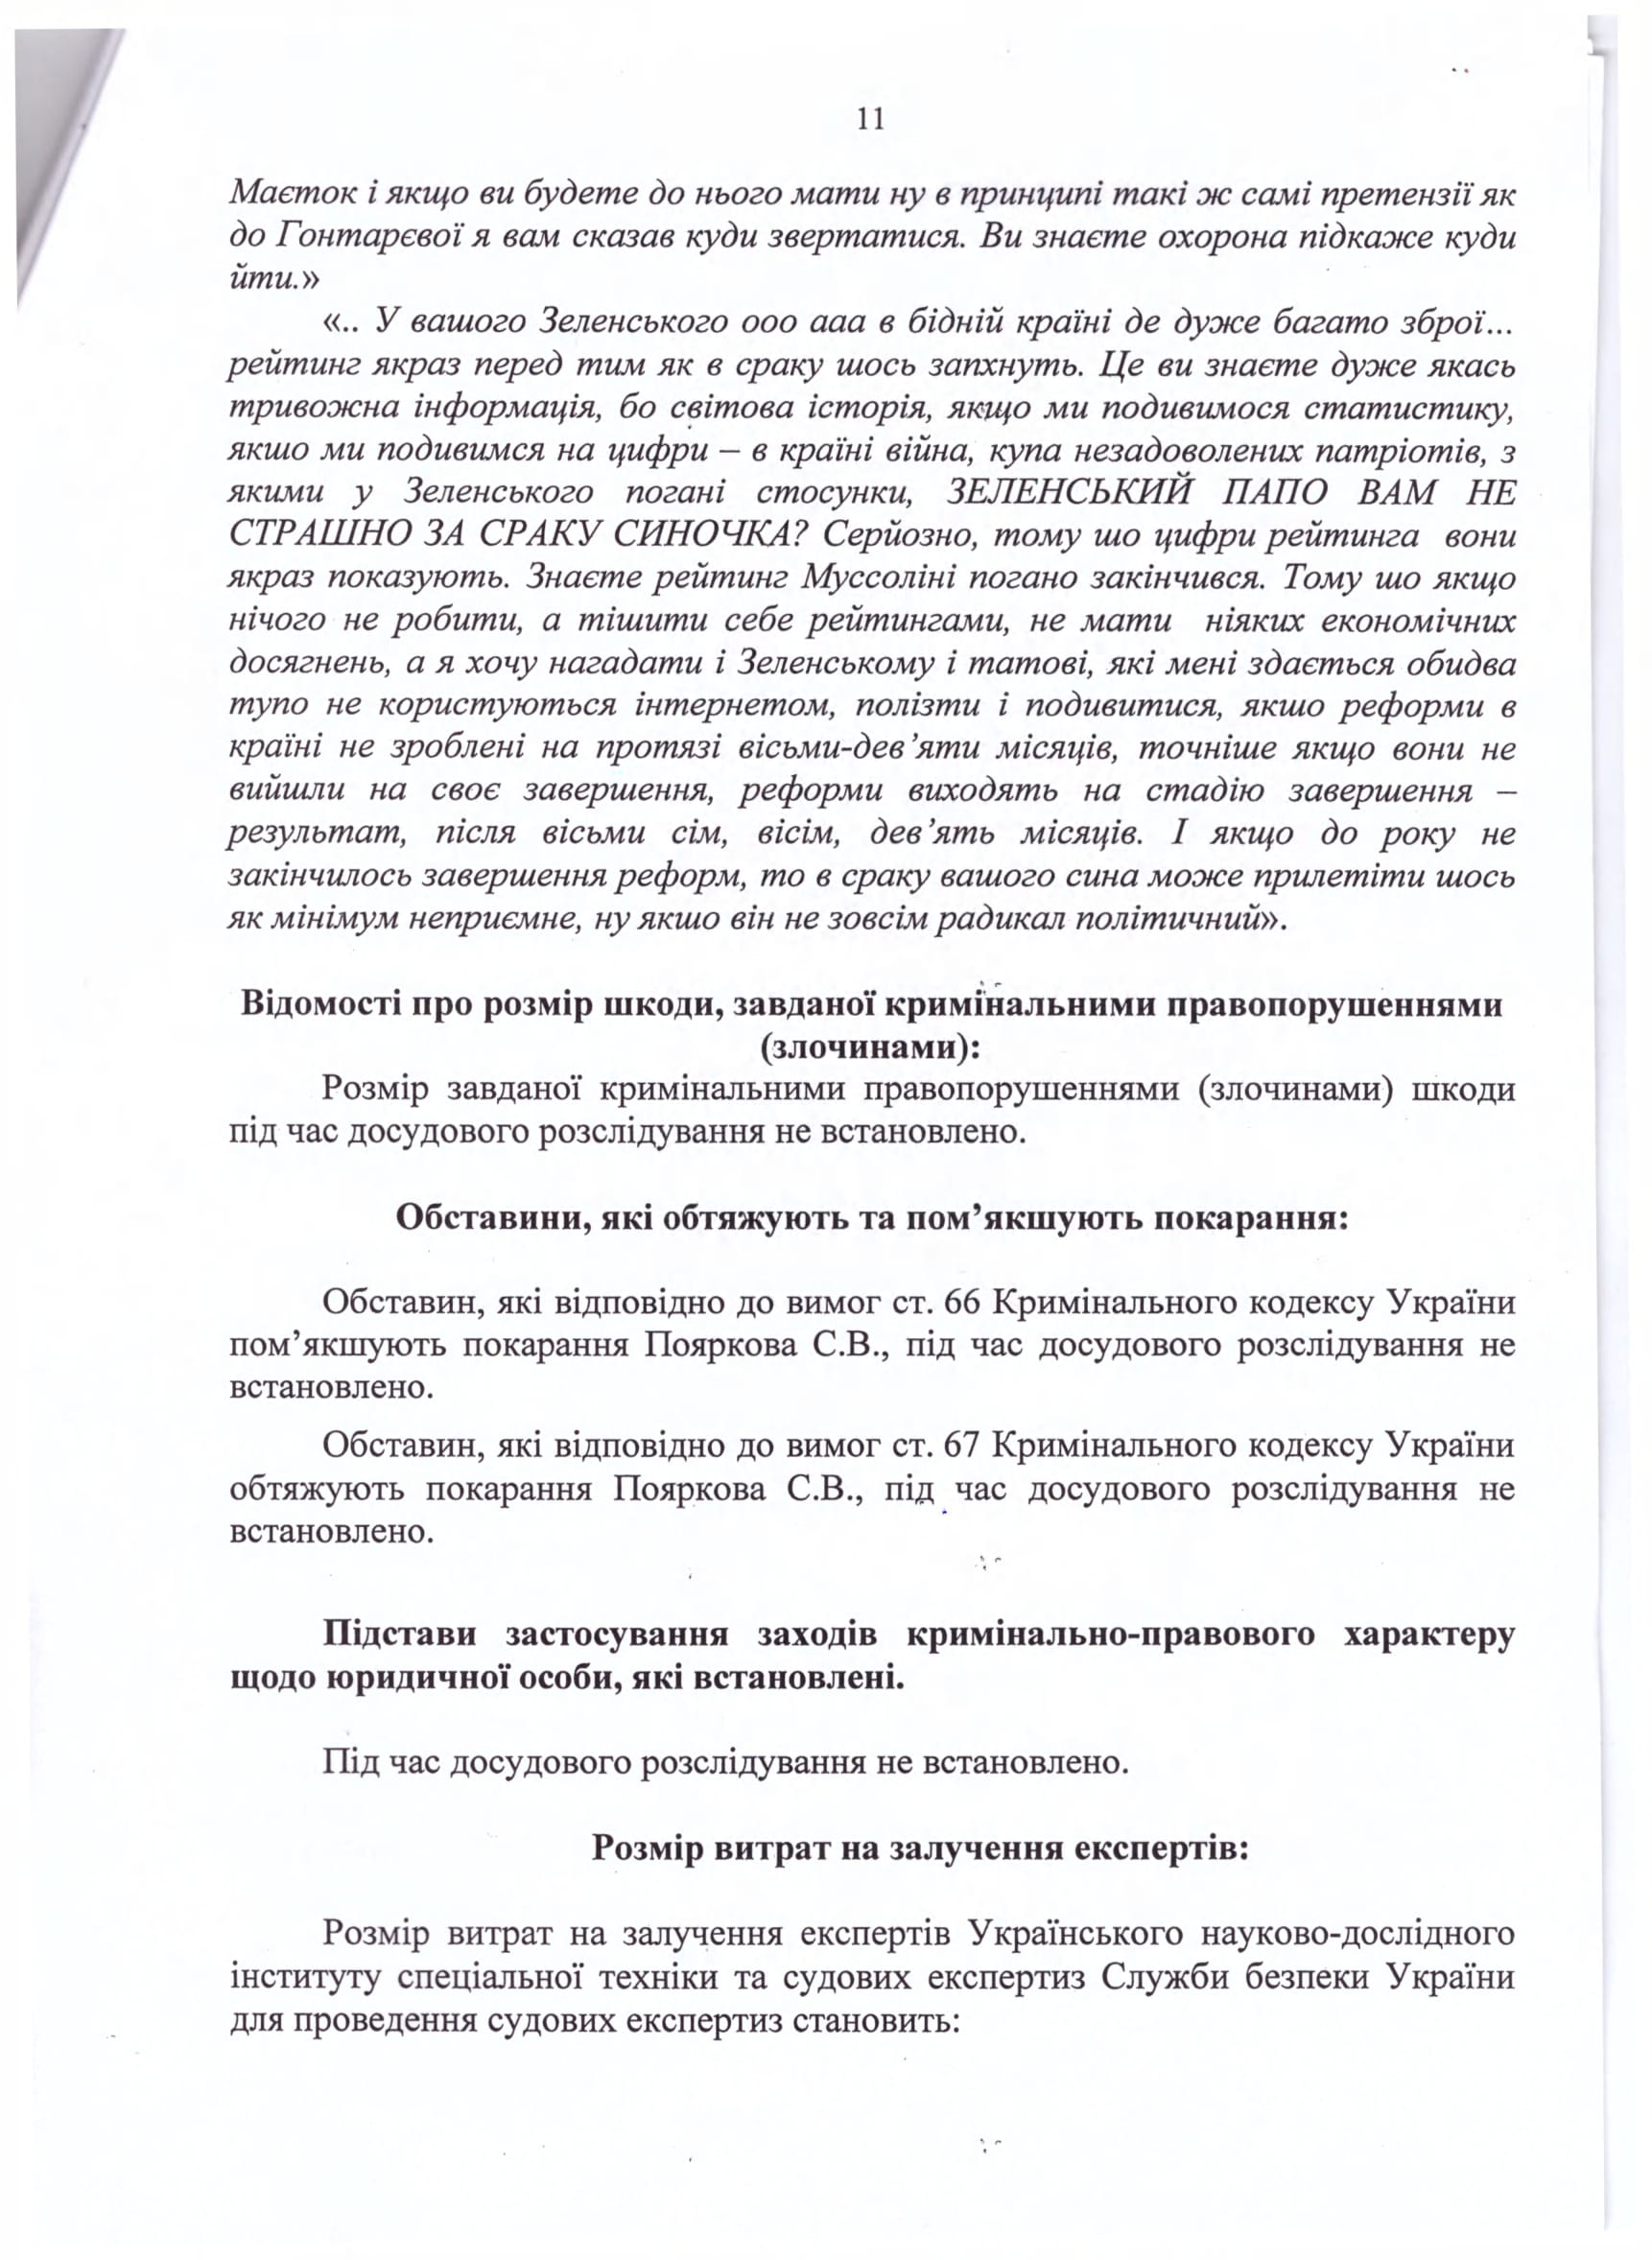 СМИ опубликовали обвинительный акт Пояркову за угрозы Зеленскому - 11 - изображение